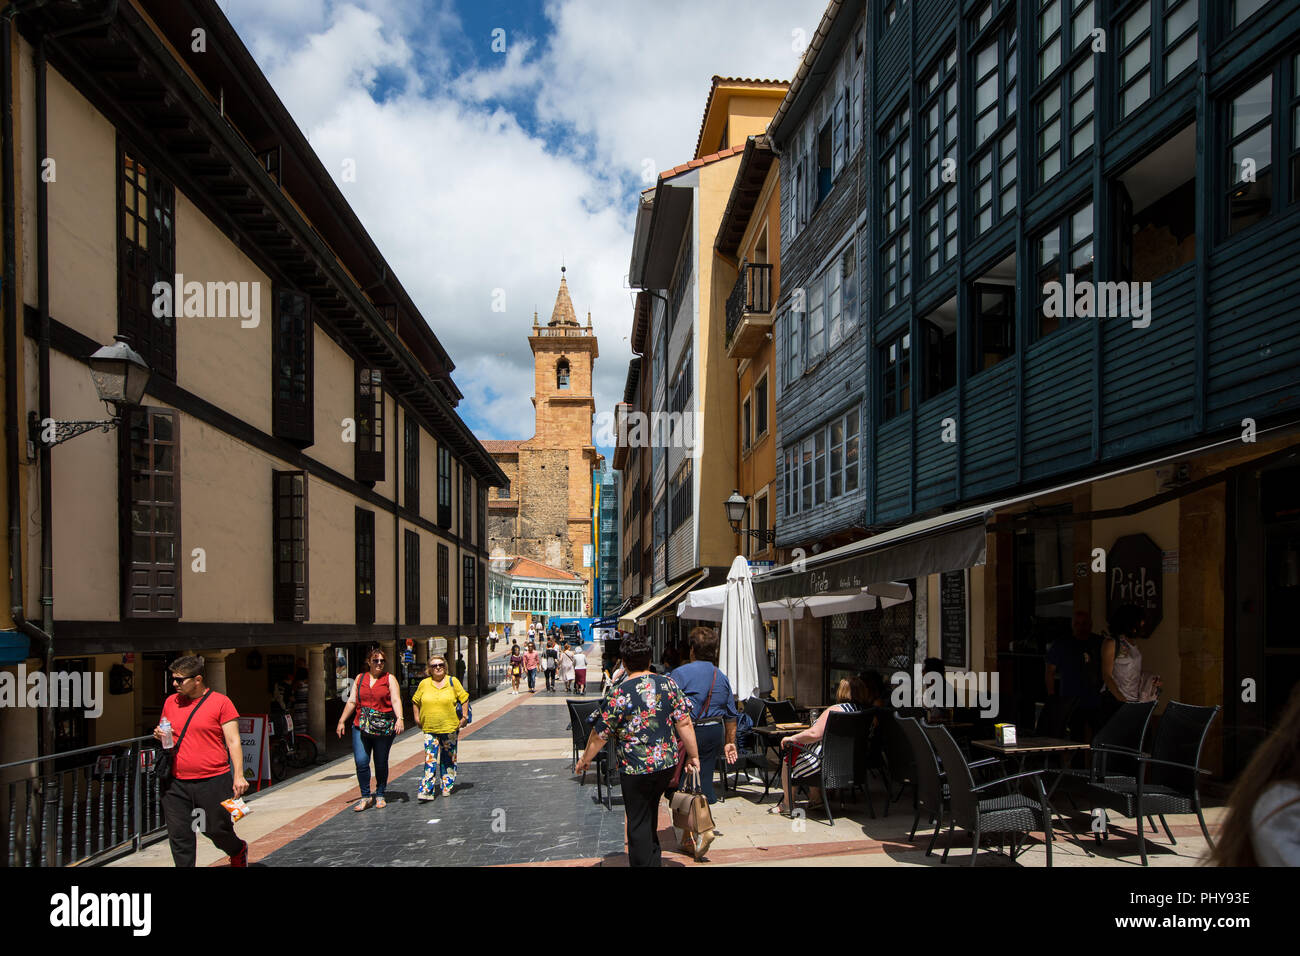 La ville d'Oviedo dans les Asturies, au nord ouest de l'Espagne Banque D'Images